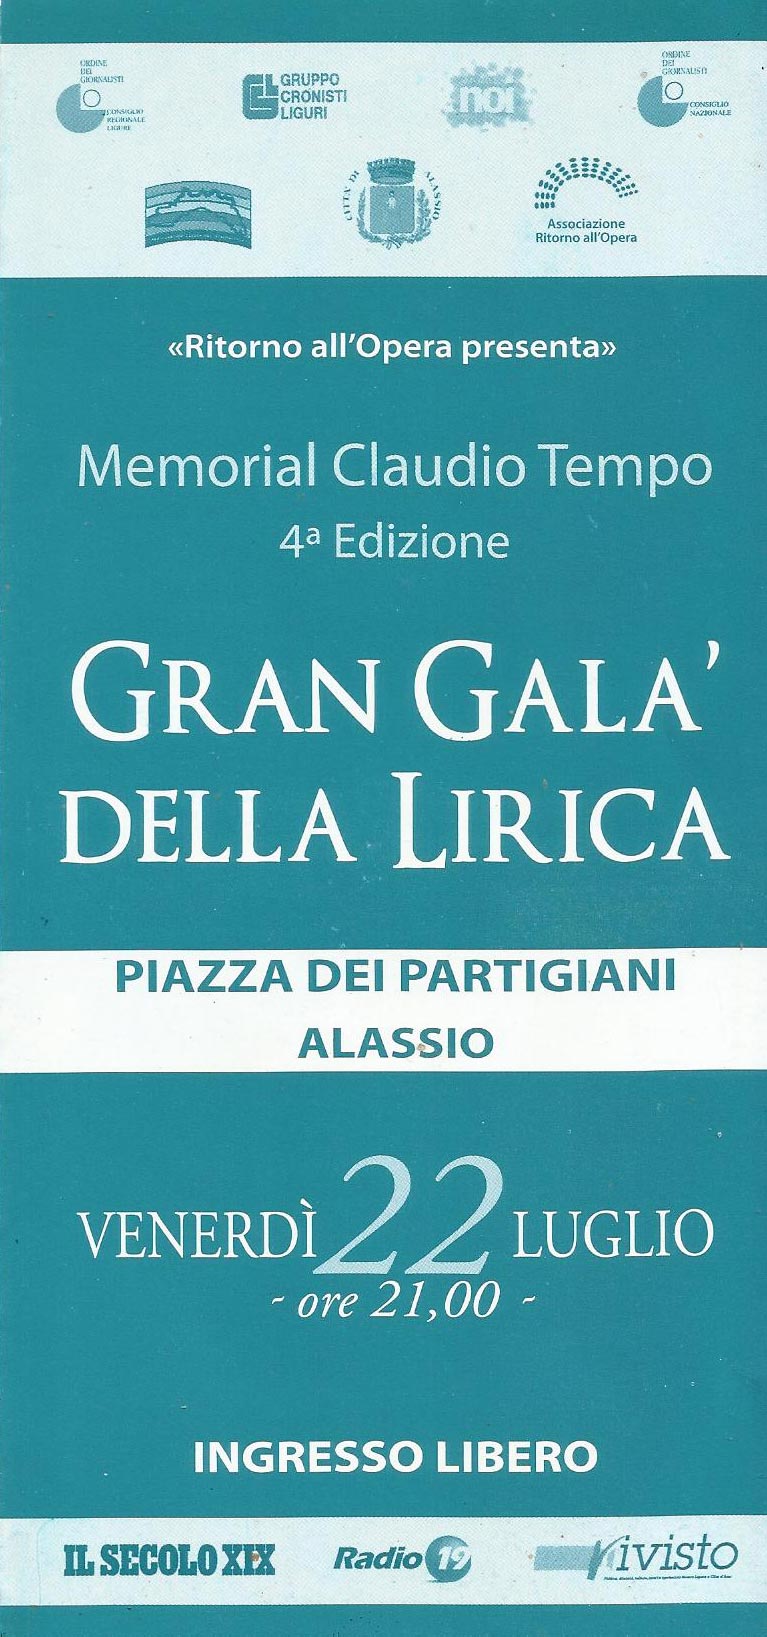 Gran-Gala-della-Lirica-Alassio-2011-memorial-claudio-tempo